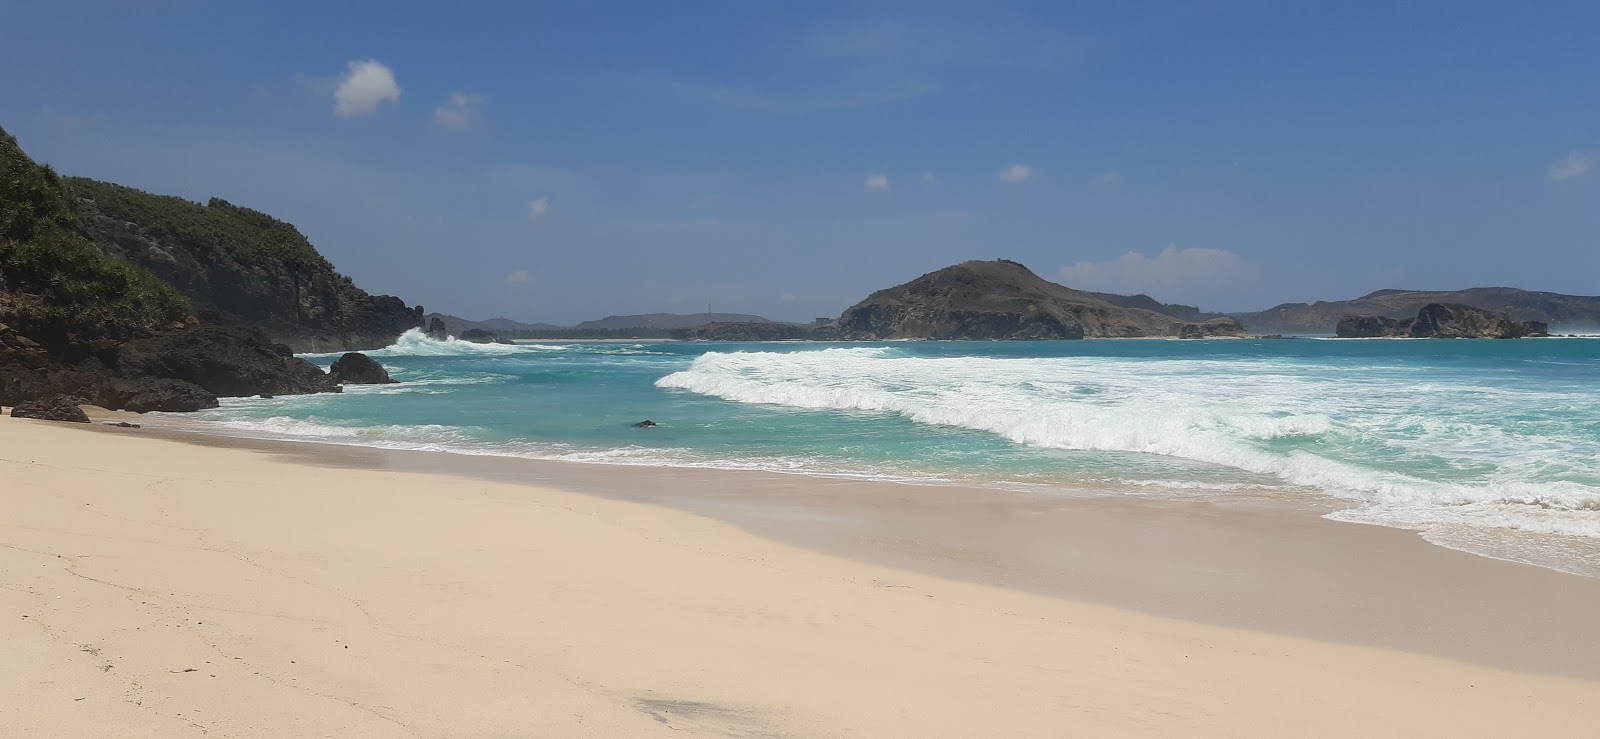 Zdjęcie Hidden Beach - popularne miejsce wśród znawców relaksu